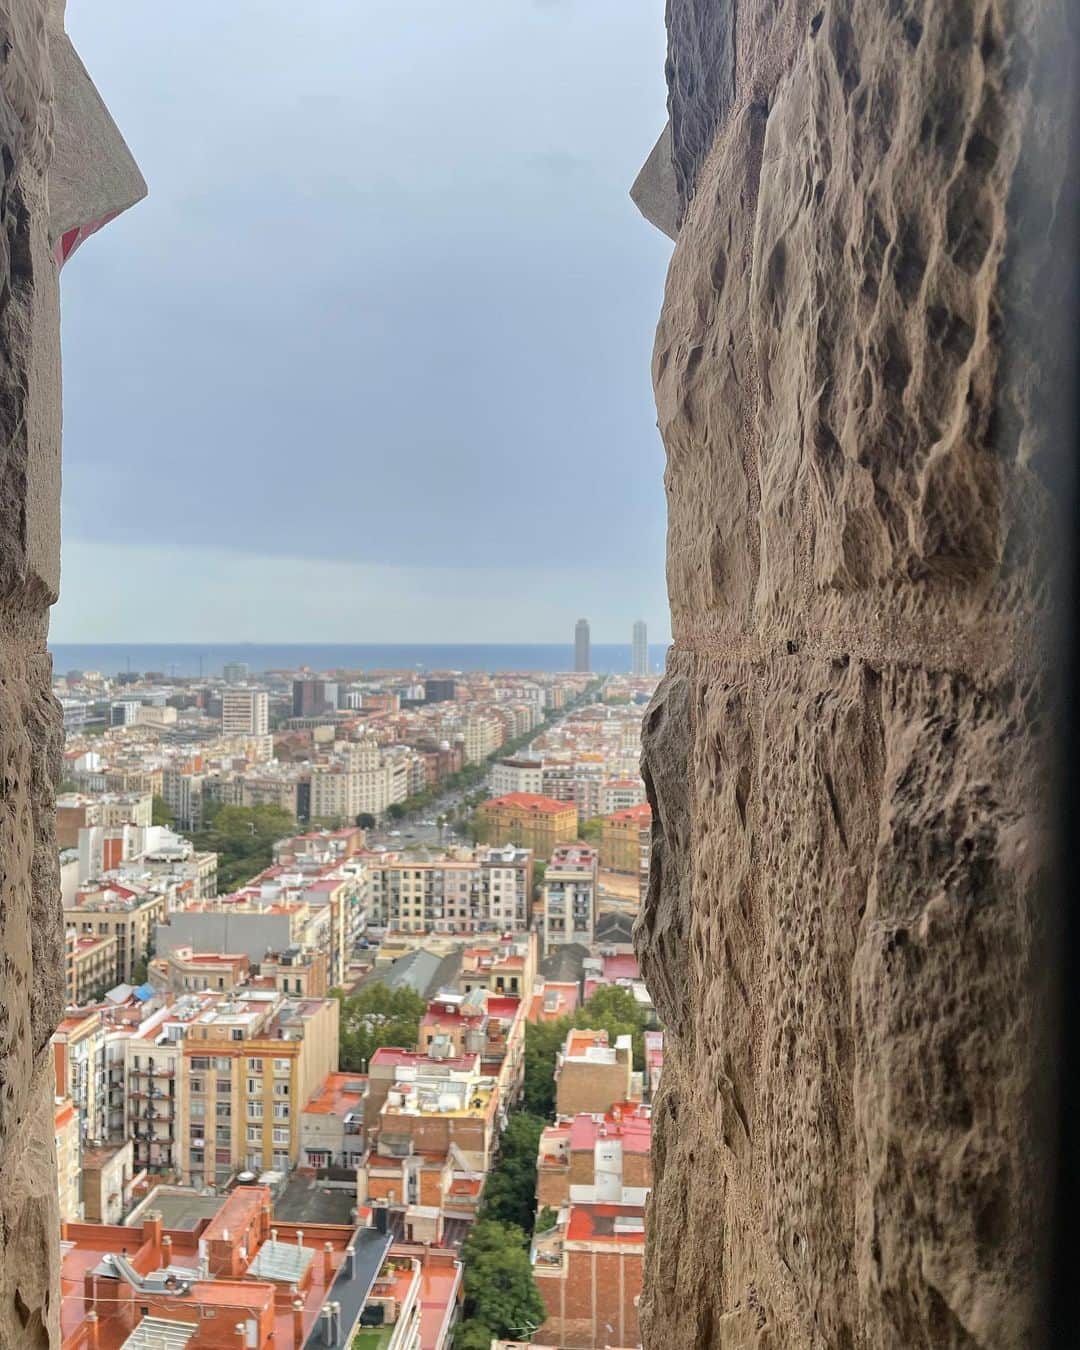 神谷明采さんのインスタグラム写真 - (神谷明采Instagram)「【Spain🇪🇸 編】　 〜Barcelona, Madrid,Toledo〜   スペイン料理が大好きで第二外国語としてスペイン語を選択するほど行きたかったスペイン……期待通り最高の国でした🥘🦐🍷  《Barcelona》  　バルセロナは、世界で一番のお気に入りの都市の一つになりました🌴 バルセロナと言えば、サグラダファミリアを始めとする世界遺産のガウディ建築群です🏰 私は、サグラダファミリア、カサバトリョ、グエル公園を訪れました。外観しか知らなかったサグラダファミリアでしたが、内側はなんと虹色の世界でした。入り口を通った時の感動は一生忘れられません……☀️ また、海がモチーフのカサバトリョ、バルセロナを代表するカメレオン（？）のあるグエル公園は、どちらもおとぎ話の中に出てくるような素敵な場所で、これらの建築物を100年以上前に作っていたことが信じられませんでした🌊🏝🐚 　楽しみにしていたスペイン料理は期待通りの美味しさでした😋 最初に入ったお店でパエリアを頼んだら、真っ黒のイカスミの素麺のようなパエリアが出てきて最初はビックリしましたが、すぐにハマりました🥘 　お酒に関しては、定番のサングリアも最高でしたが、tinto de verano（ティント デ ベラノ）という赤ワインとレモンソーダのカクテルが本当に美味しかったです🍋🍷 このお酒はバスで現地の日本人の方に教えて頂いたものです！本当にありがとうございます😆 　日本に帰ってきてから、スペイン出身の知り合いに「バルセロナ」は日本の「京都」だよ、自分の都市を特別だと思ってるんだよと教えてもらい、目から鱗でした……知らなかった………👀  《Madrid》  　特急列車でバルセロナからマドリードに半日かからずに移動することができました！ 主に美術館と王宮を回ったのですが、王宮から臨む広大な自然に心を打たれ、夕焼けの王宮は筆舌し難い美しさでした🏰👸 これから行く予定のある方は行くことを強くお勧めします！ 　プラド美術館、ソフィア王妃芸術センターも素敵でした👩‍🎨 フランスに比べて個性的な画家が多いと改めて感じました。ゴヤもピカソもダリも鮮烈…………やはりゴヤの『1808年5月3日』の印象が本当に強かったです……今まで写実的な絵画に心を奪われることが多かったのですが、この絵画は力強さとメッセージ性が他の絵画とは圧倒的に違うと感じました…学生証があると無料で入れるのでオススメです…………… 私はここで学生証を無くしました……🤣  《Toledo 》  　トレドは、キリスト教・イスラーム・ユダヤ教三つの文化の混ざりあう美しい世界遺産の城塞都市です。西ゴート王国の首都トレドは、8世紀にイスラーム勢力に征服されるも、11世紀レコンキスタにより再びキリスト教勢力下に置かれます。初めて街を見た時、私の思う中世の都市そのものでした。石造りの門に橋、まさしく城塞でした。街の中は細い路地に急な坂道、坂道、坂道………とにかく坂道ばかりでしたが、一つ一つが可愛らしい路地で街を歩いていても辛くありませんでした！ 　トレドに行ったら是非マザパンを食べてみてください……坂道で疲れた体に沁みます…🤣  　スペイン語を復習していかなかったことが唯一の悔いですが、それ以外は最高の滞在でした！  また行きたい国ランキング圧倒的一位🇪🇸🥘☀️  Adiós👋  #spain #barcelona #madrid #toledo #sagradafamilia #casabatllo #parkguell #ひとり旅」10月11日 20時57分 - asa_kamiya